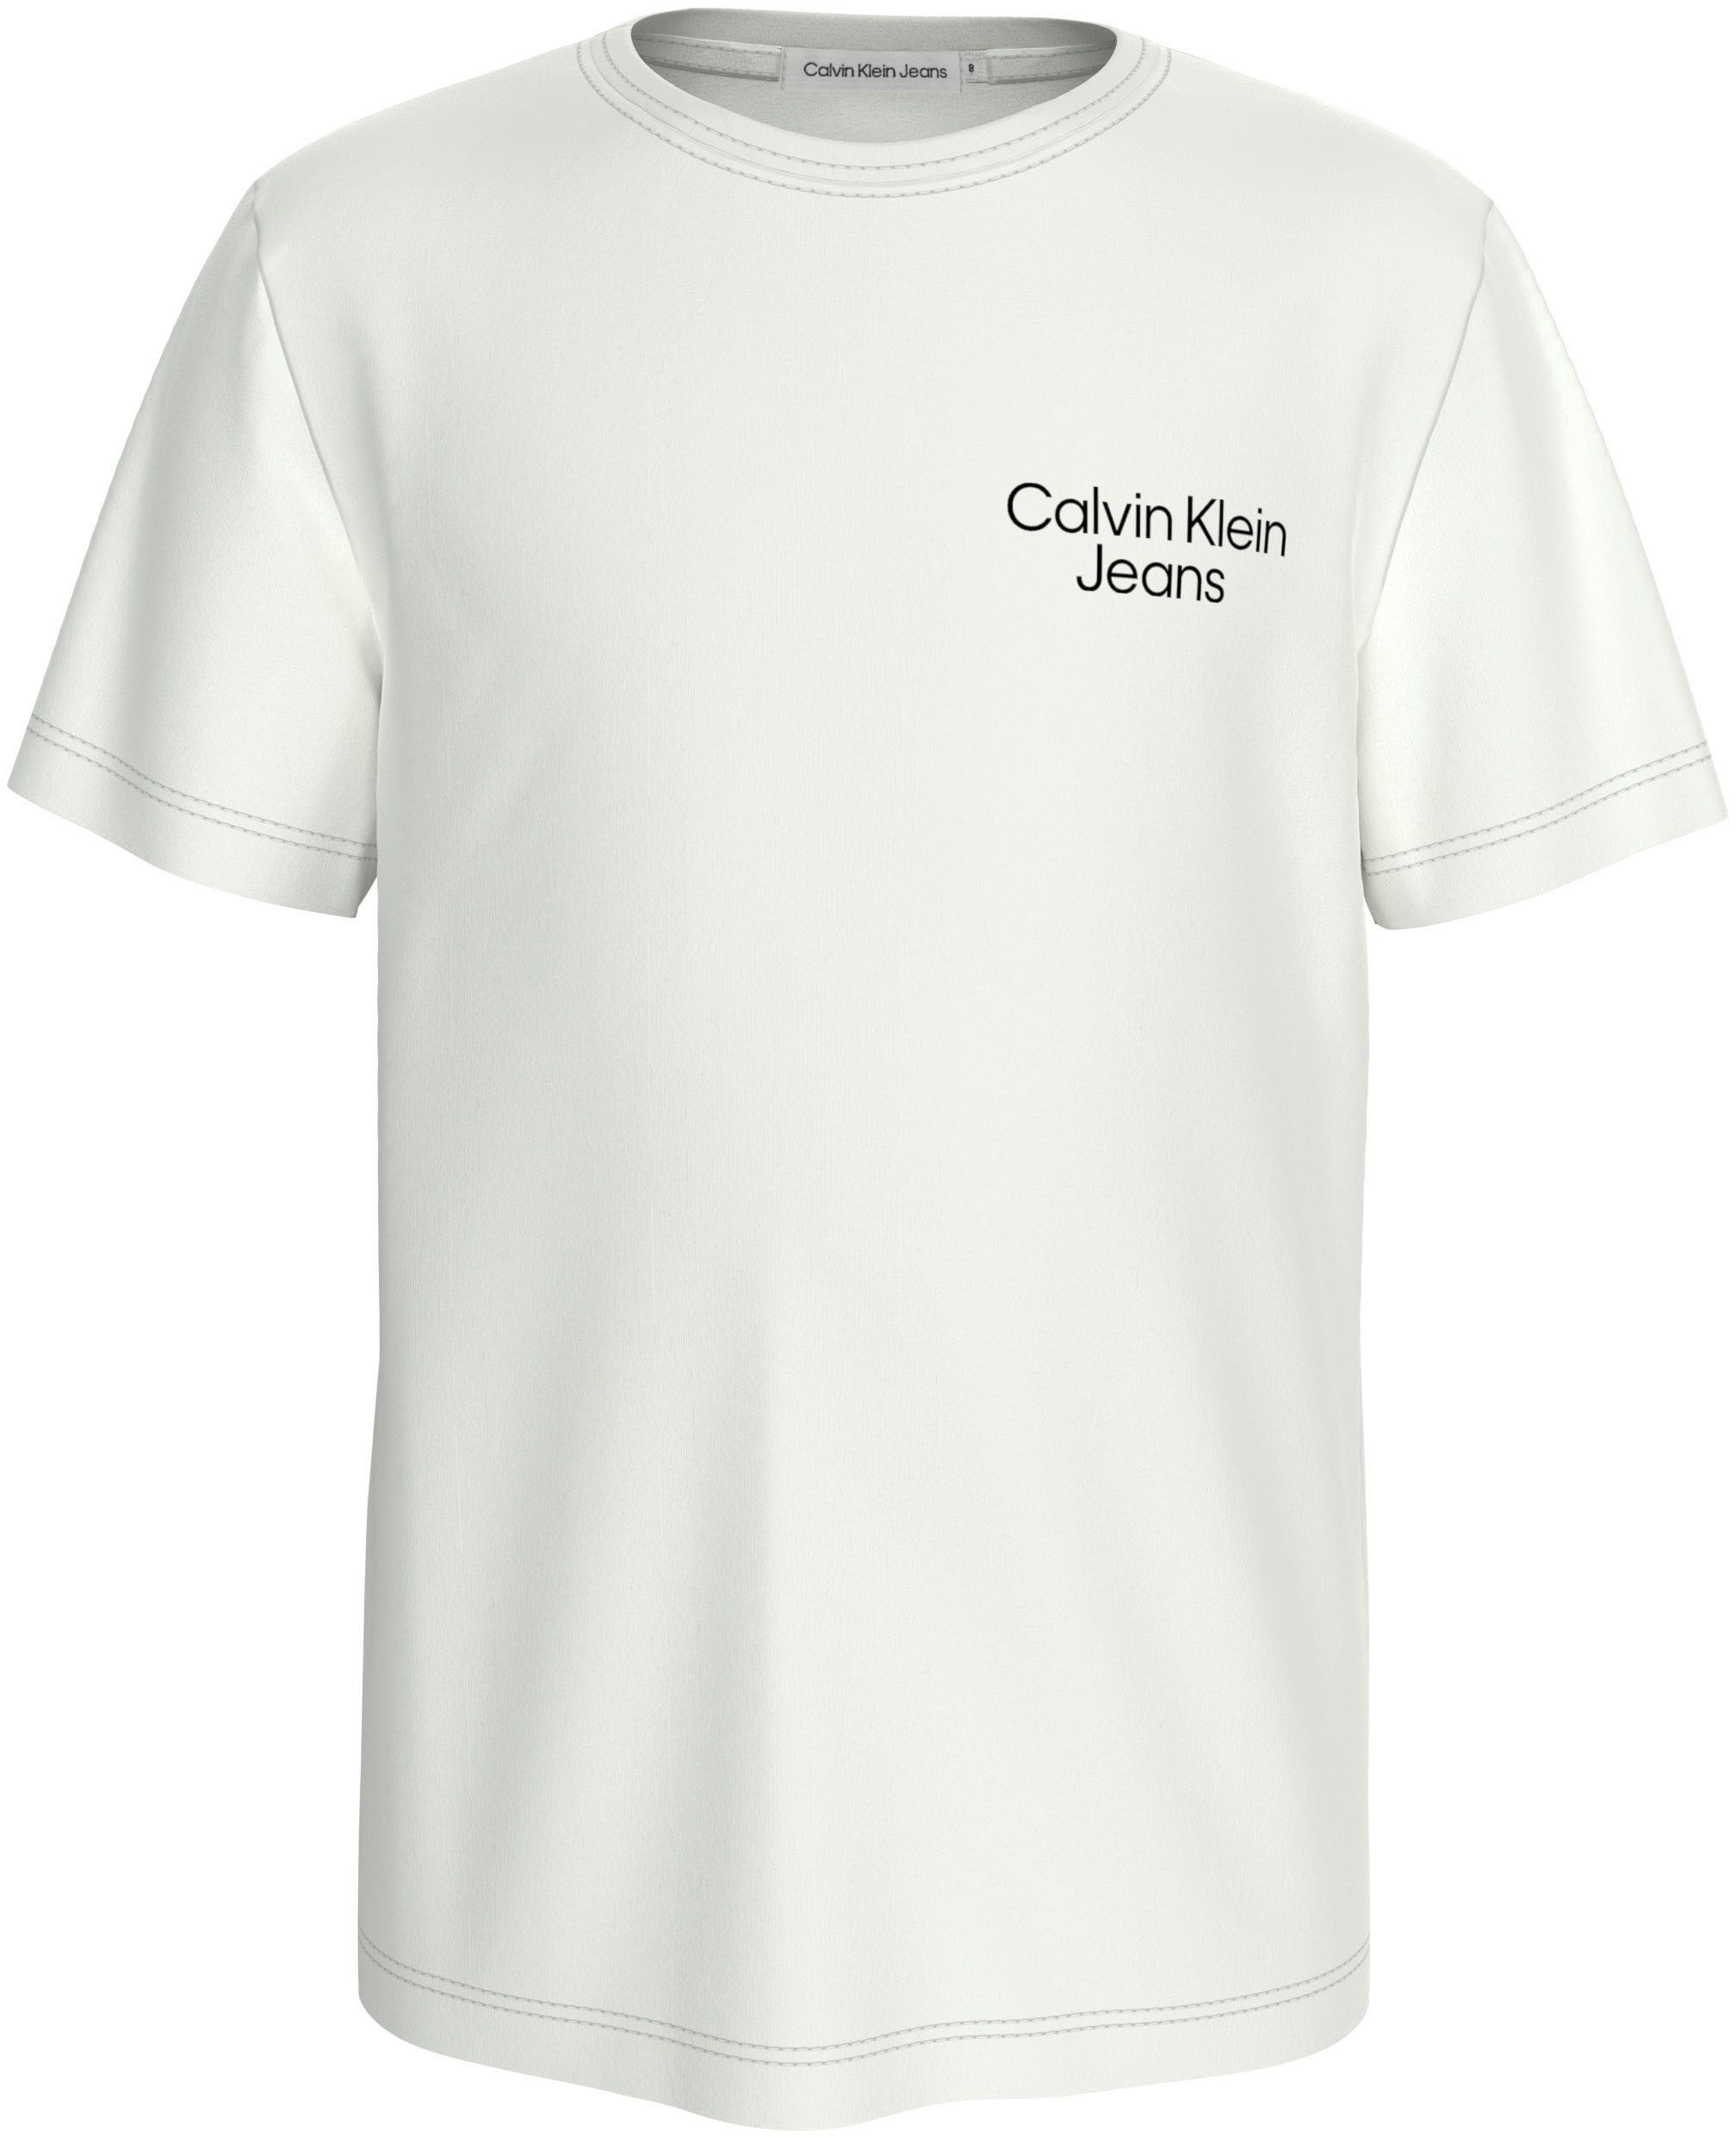 Calvin Klein Jeans T-Shirt für Kinder bis 16 Jahre und mit Calvin Klein Logoschriftzug